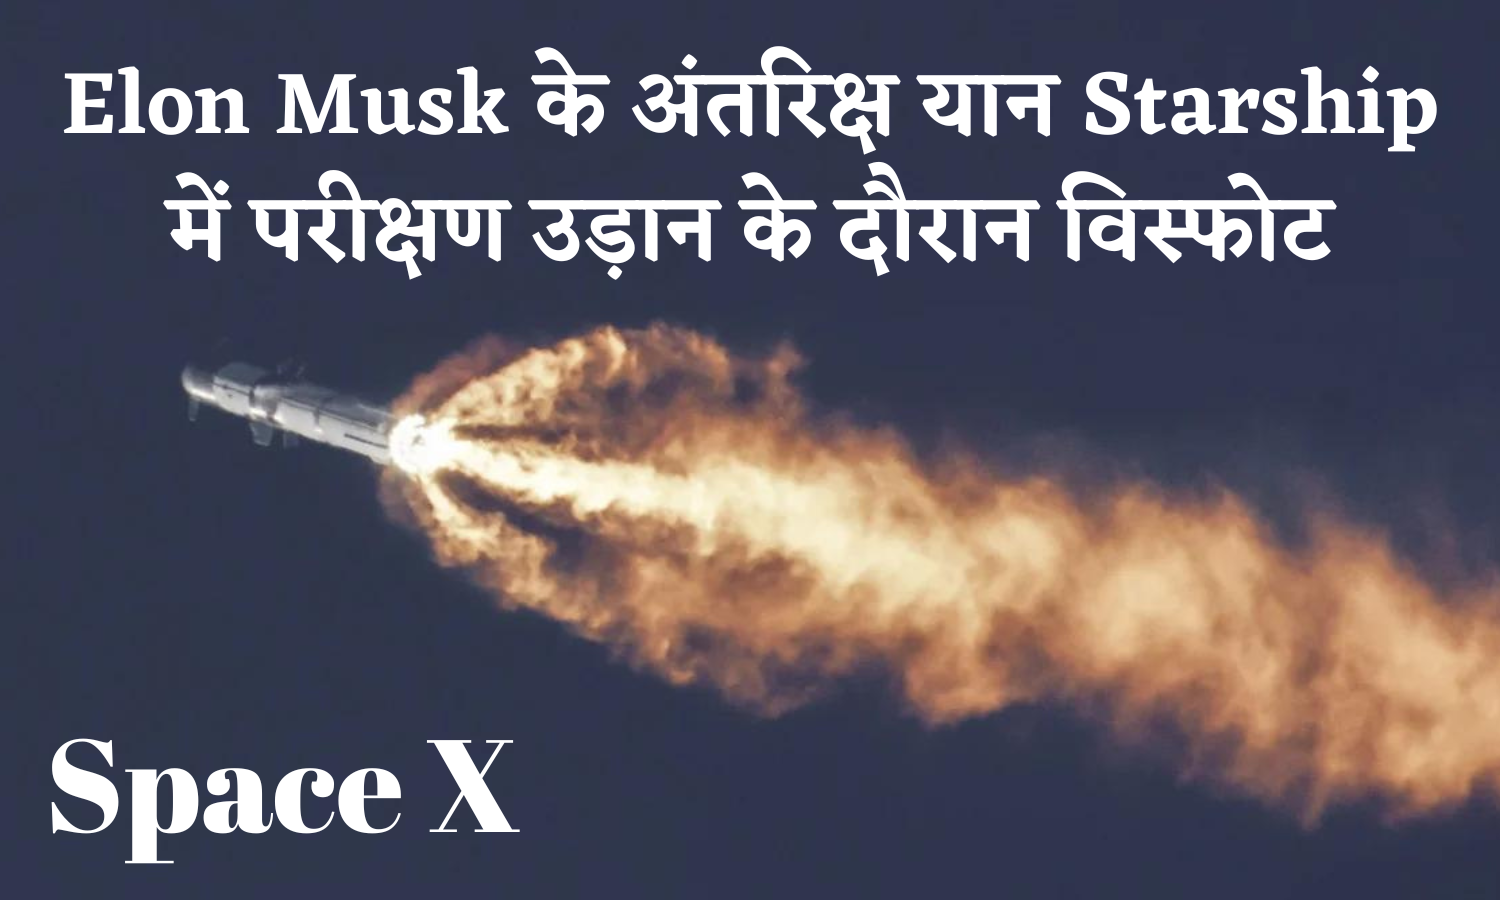 Elon Musk के अंतरिक्ष यान Starship में परीक्षण उड़ान के दौरान विस्फोट